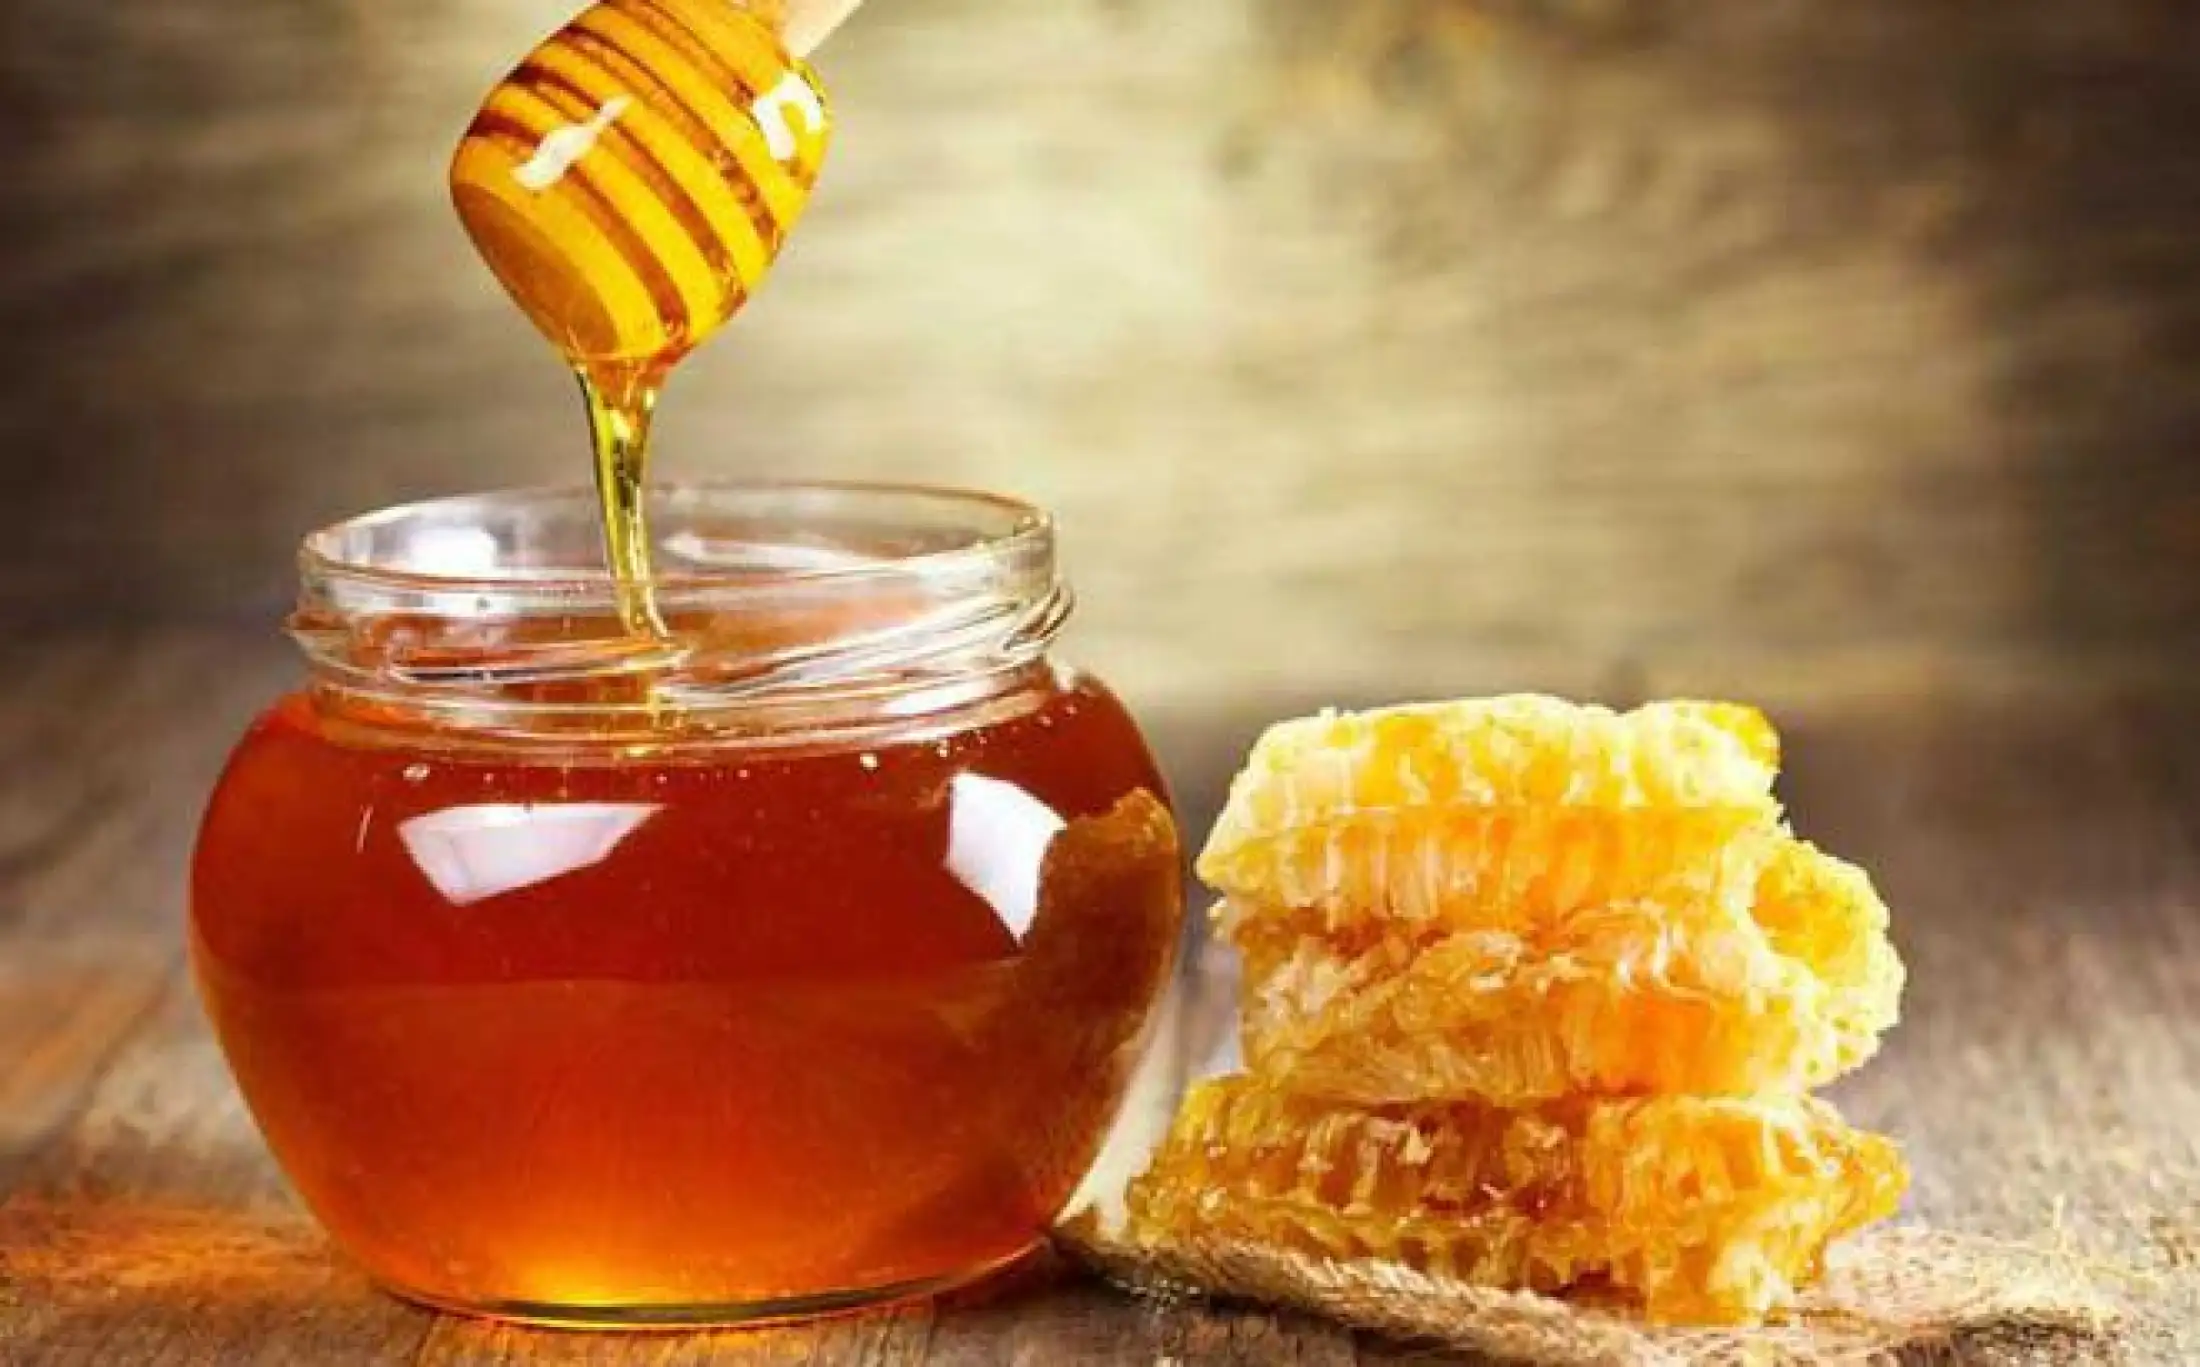 mật ong rừng tây nguyên 2 lít 4 chai 500ml (thương hiệu hoang store ) - loại cao cấp dùng tốt cho sức khỏe 5